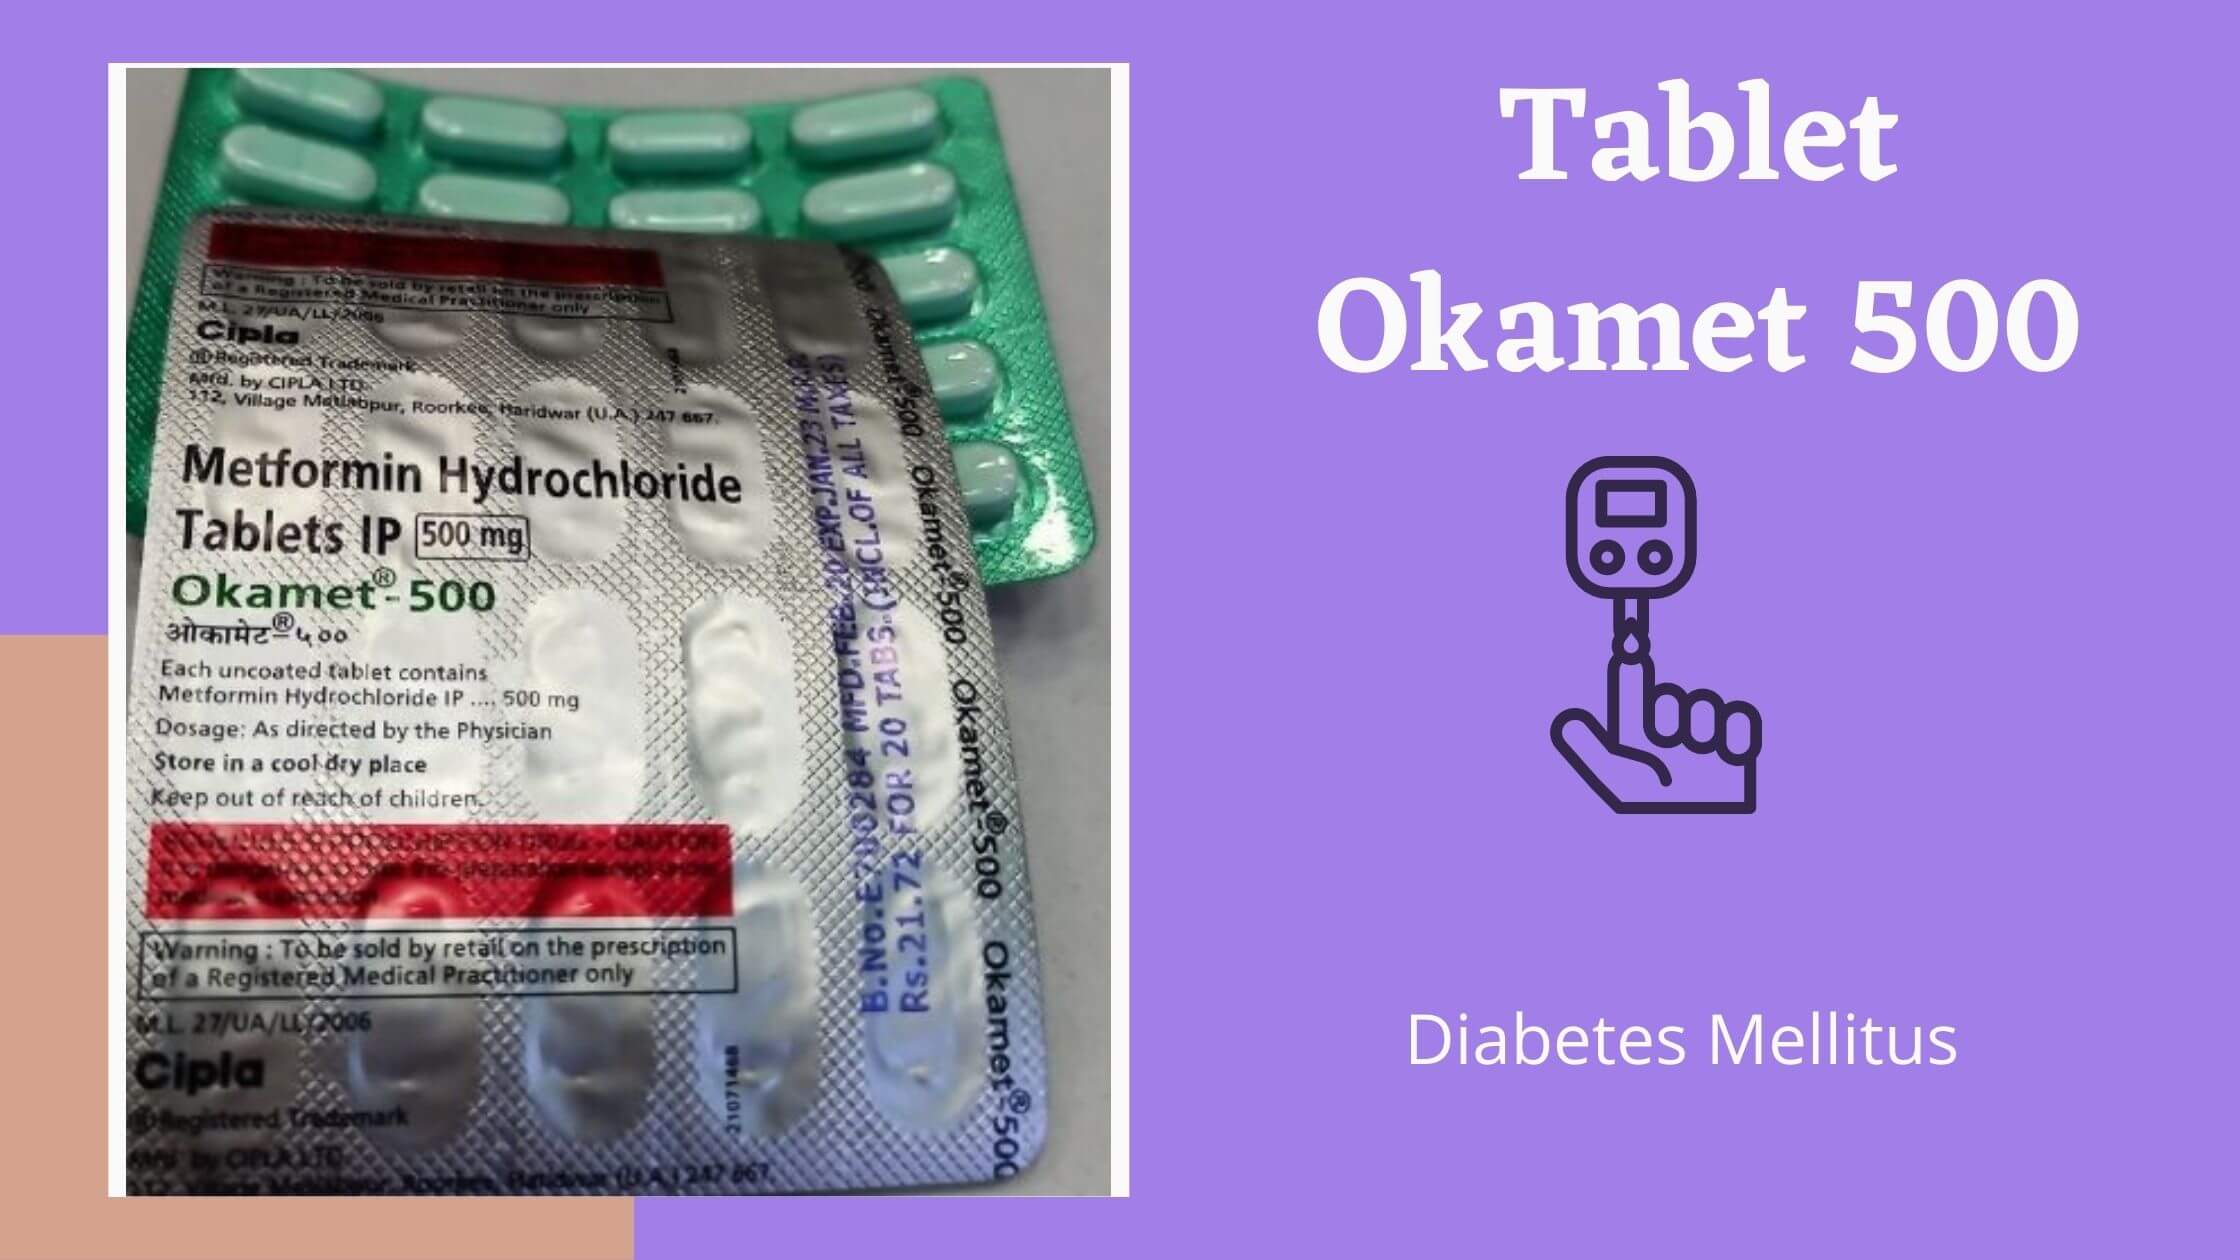 Tablet Okamet 500